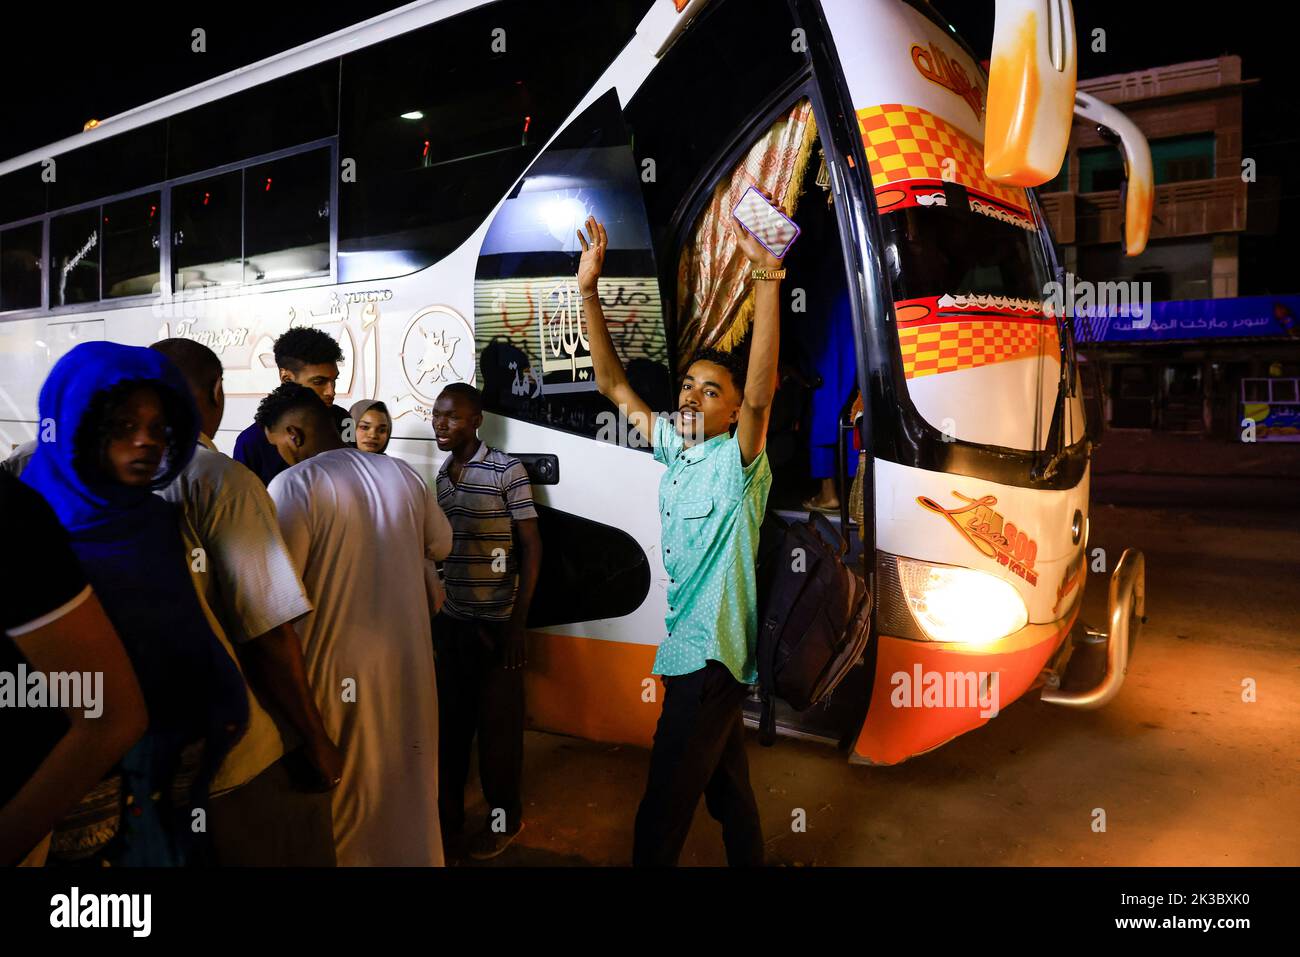 Mohamed waves to his friends before the bus leaves for Egypt in Khartoum, Sudan September 24, 2022. REUTERS/Mohamed Nureldin Abdallah Stock Photo